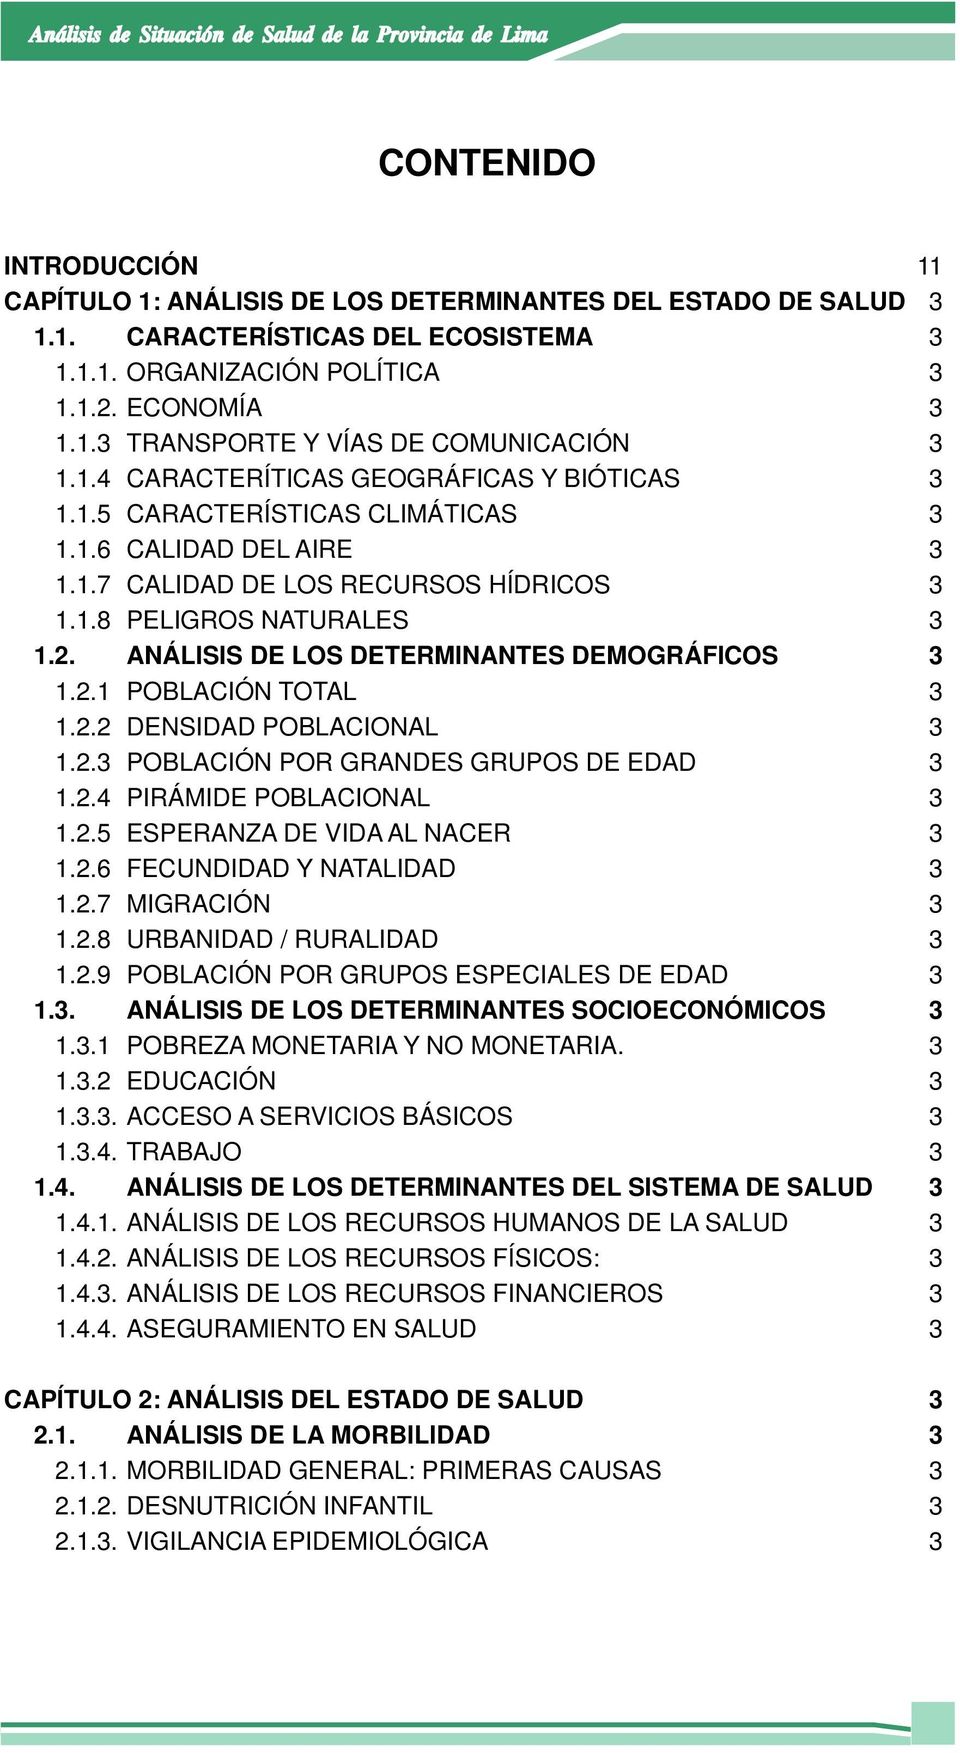 ANÁLISIS DE LOS DETERMINANTES DEMOGRÁFICOS 3 1.2.1 POBLACIÓN TOTAL 3 1.2.2 DENSIDAD POBLACIONAL 3 1.2.3 POBLACIÓN POR GRANDES GRUPOS DE EDAD 3 1.2.4 PIRÁMIDE POBLACIONAL 3 1.2.5 ESPERANZA DE VIDA AL NACER 3 1.